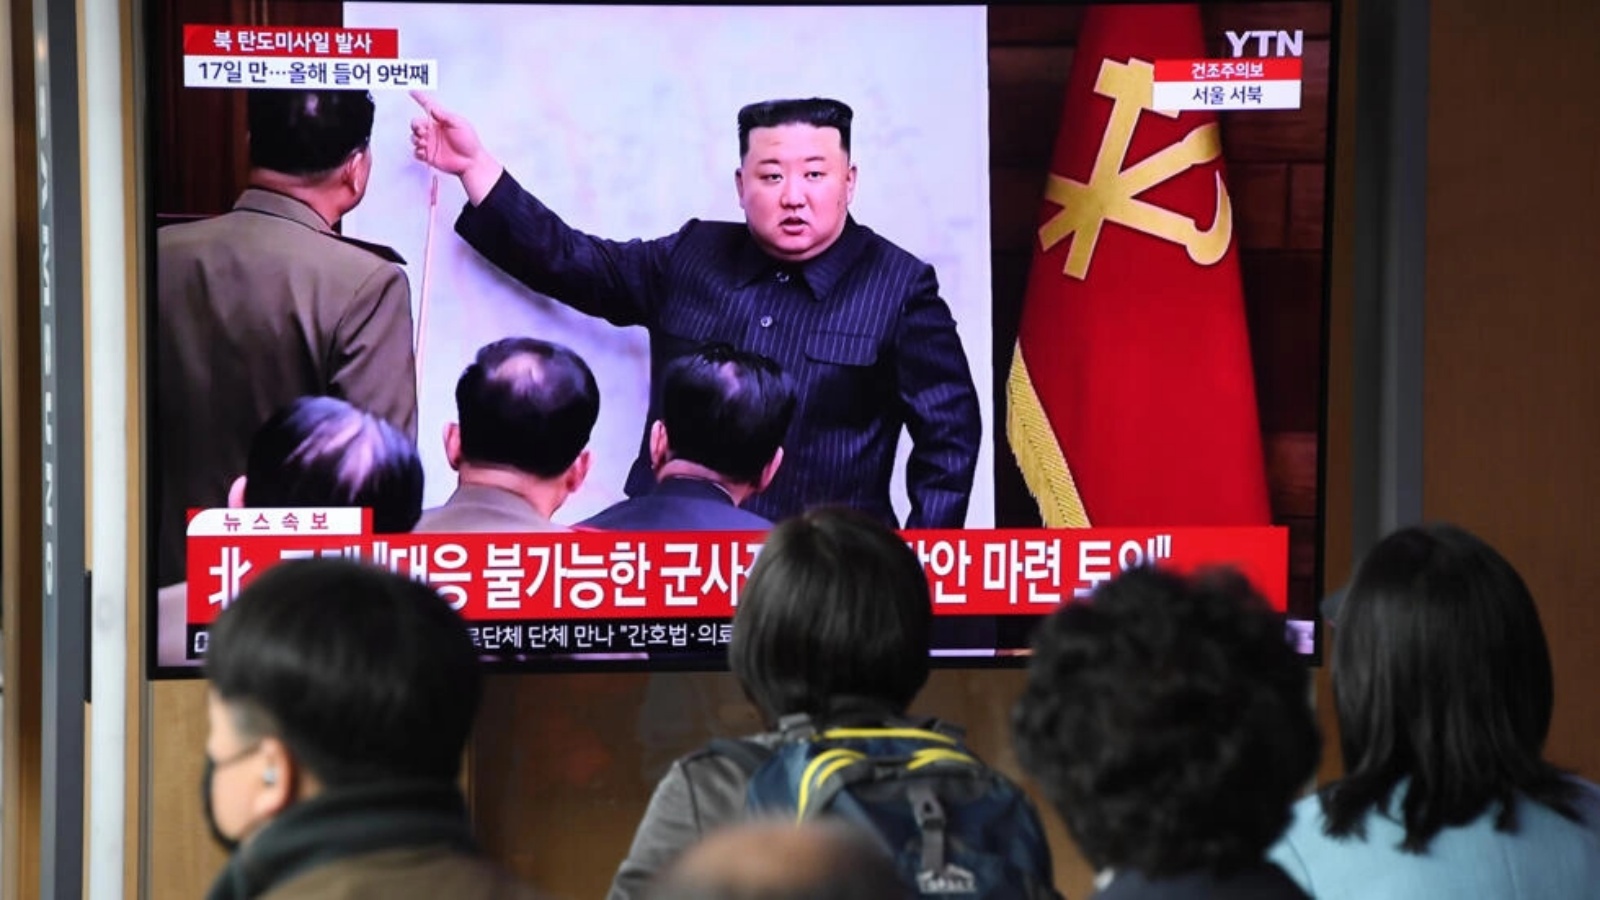 شاشة تلفزيون تعرض بثًا إخباريًا مع ملف لقطات للزعيم الكوري الشمالي كيم جونغ أون، في محطة سكة حديد في سيول في 13 أبريل 2023